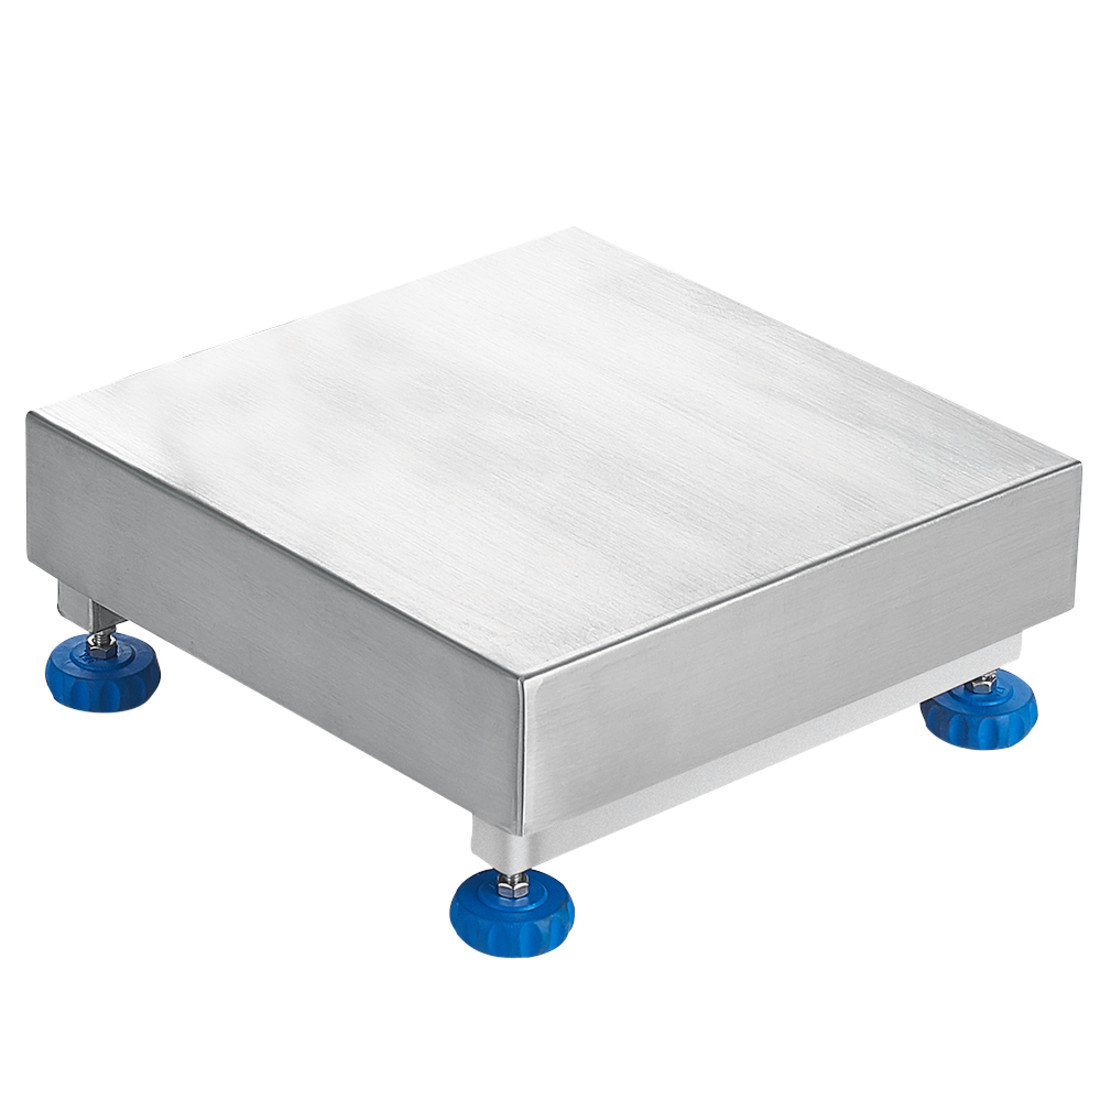 W Series Stainless Steel Waterproof Platforms